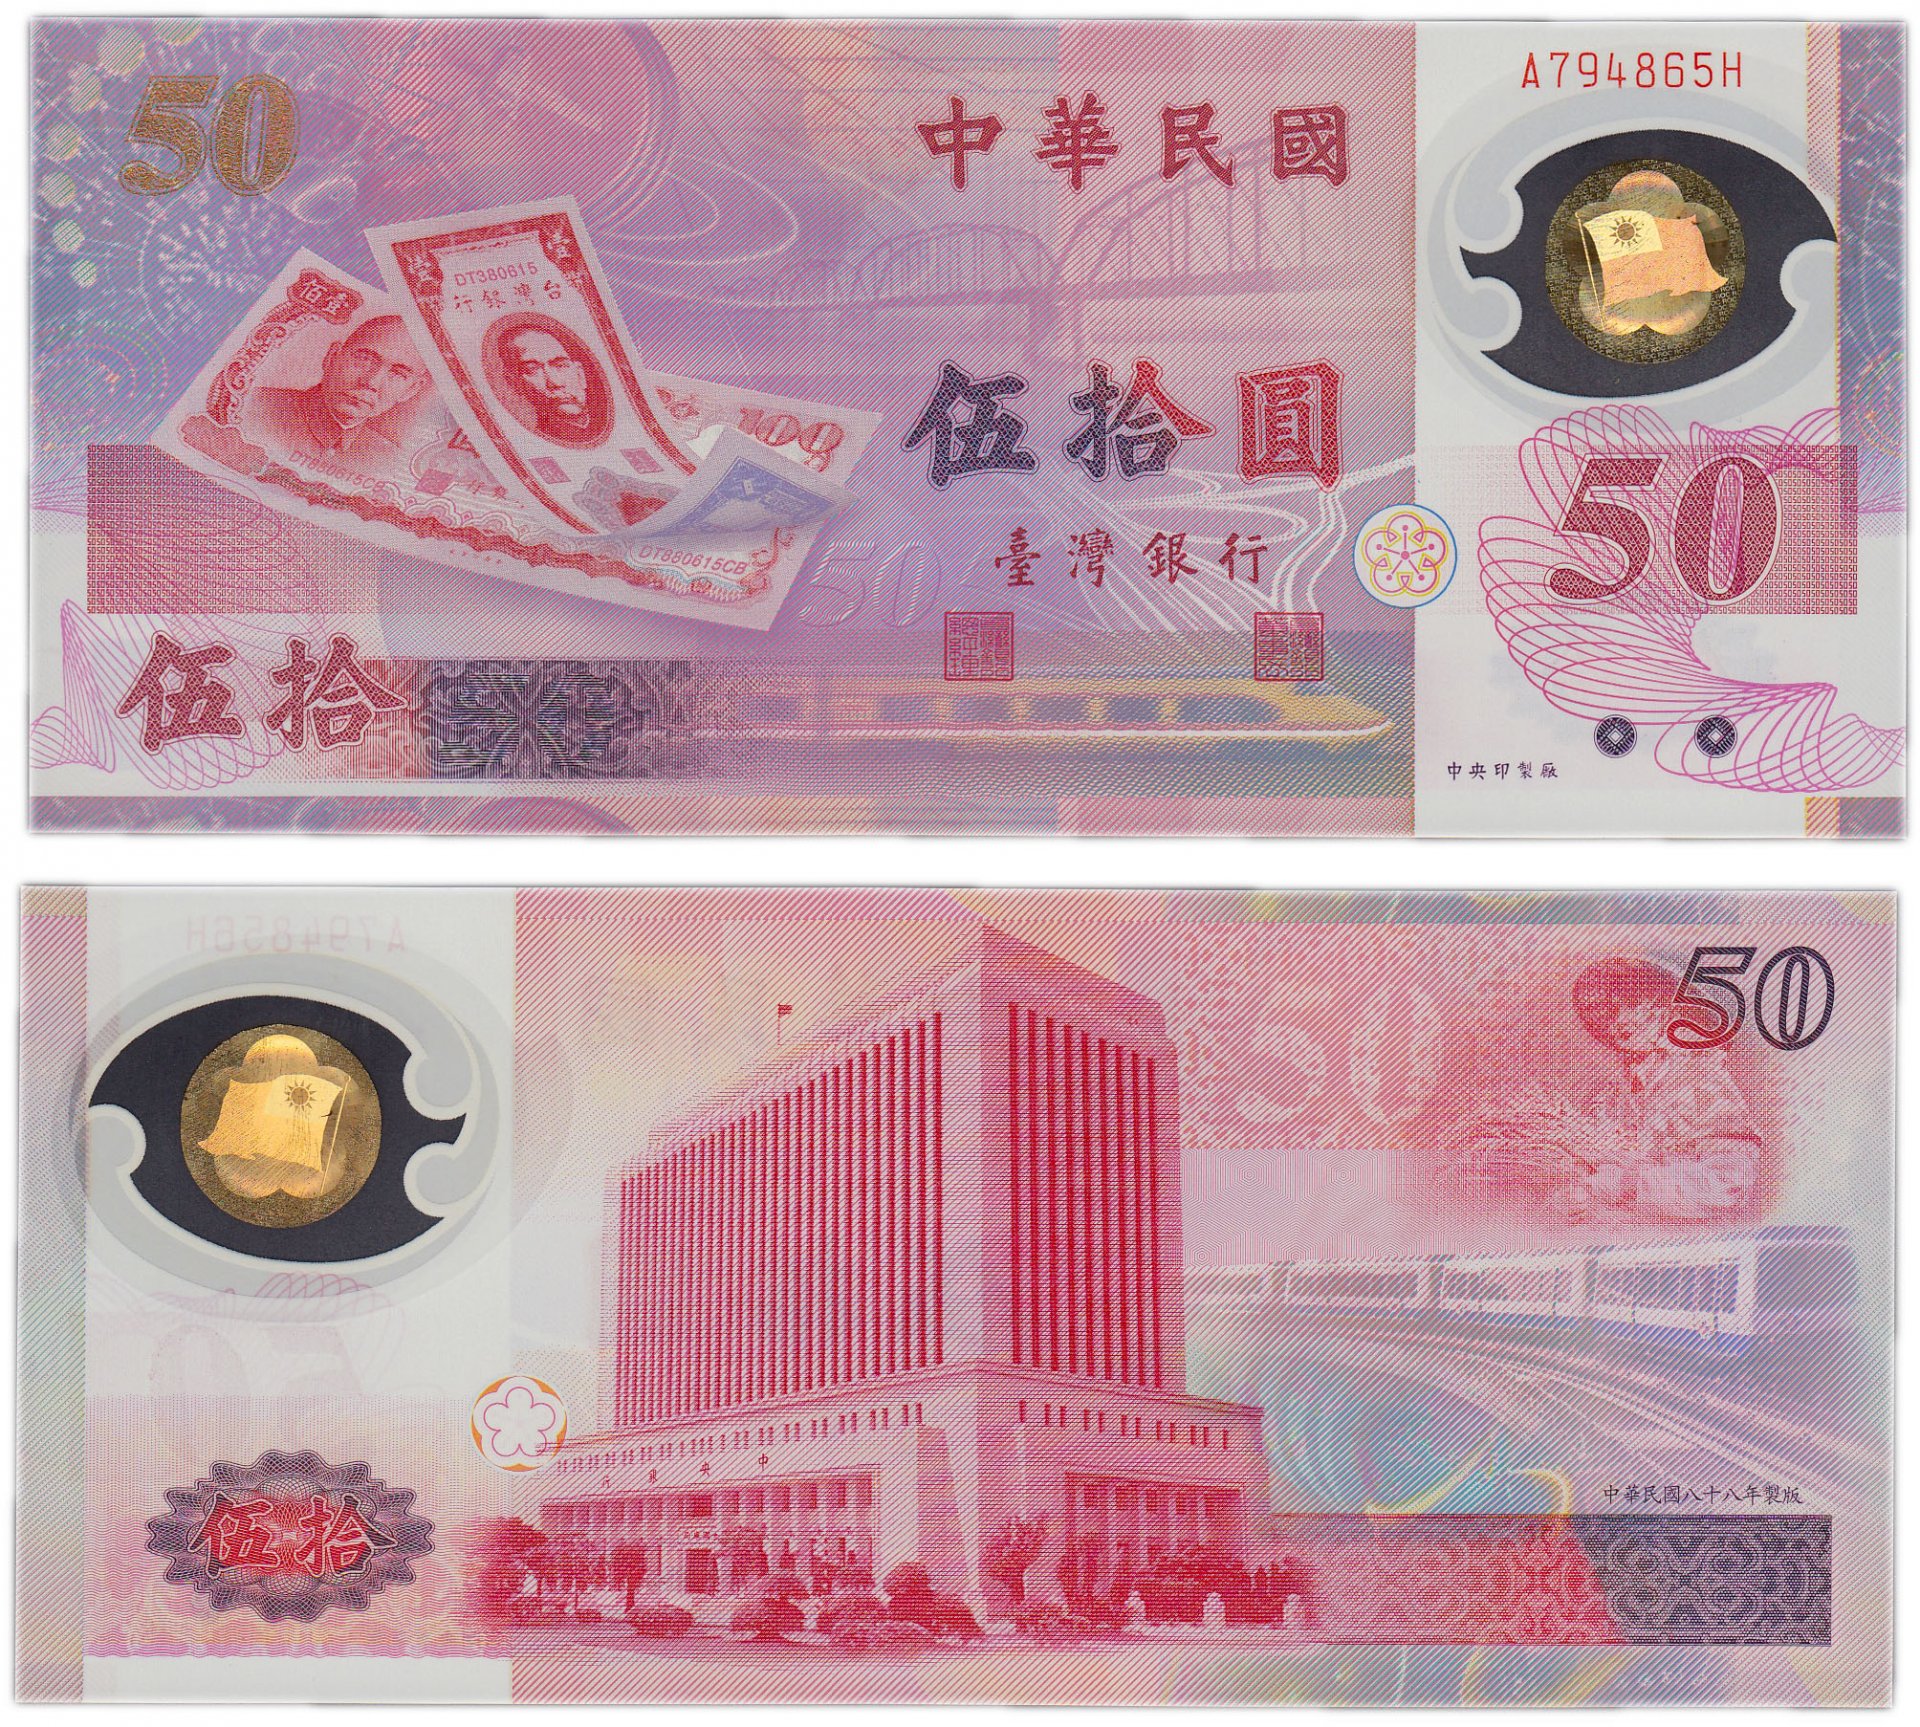 тайвань деньги